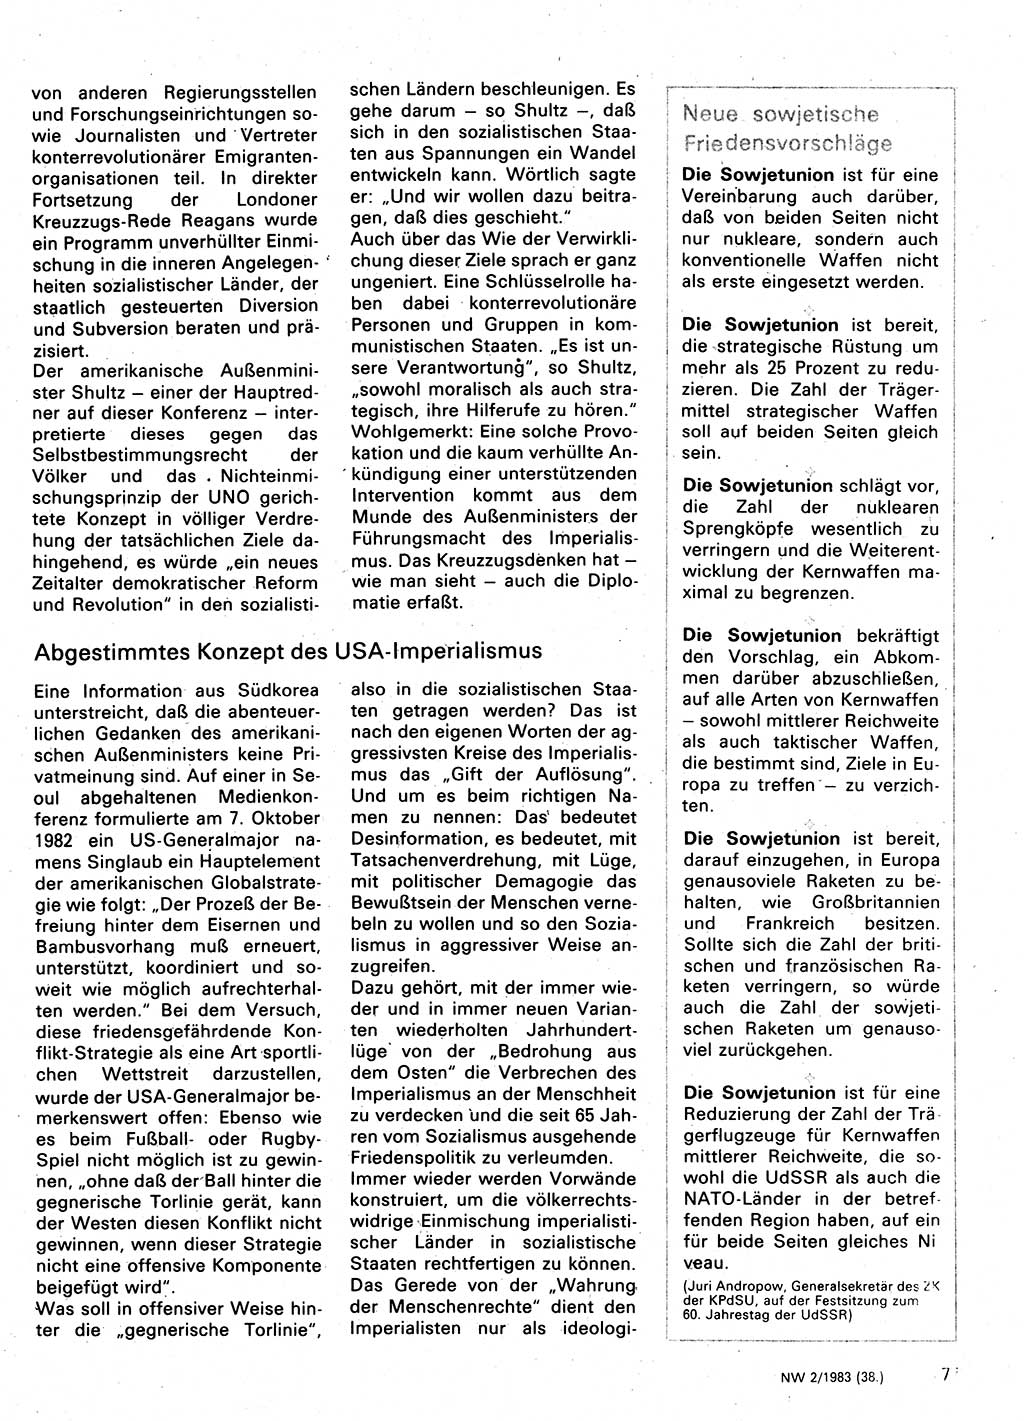 Neuer Weg (NW), Organ des Zentralkomitees (ZK) der SED (Sozialistische Einheitspartei Deutschlands) für Fragen des Parteilebens, 38. Jahrgang [Deutsche Demokratische Republik (DDR)] 1983, Seite 77 (NW ZK SED DDR 1983, S. 77)